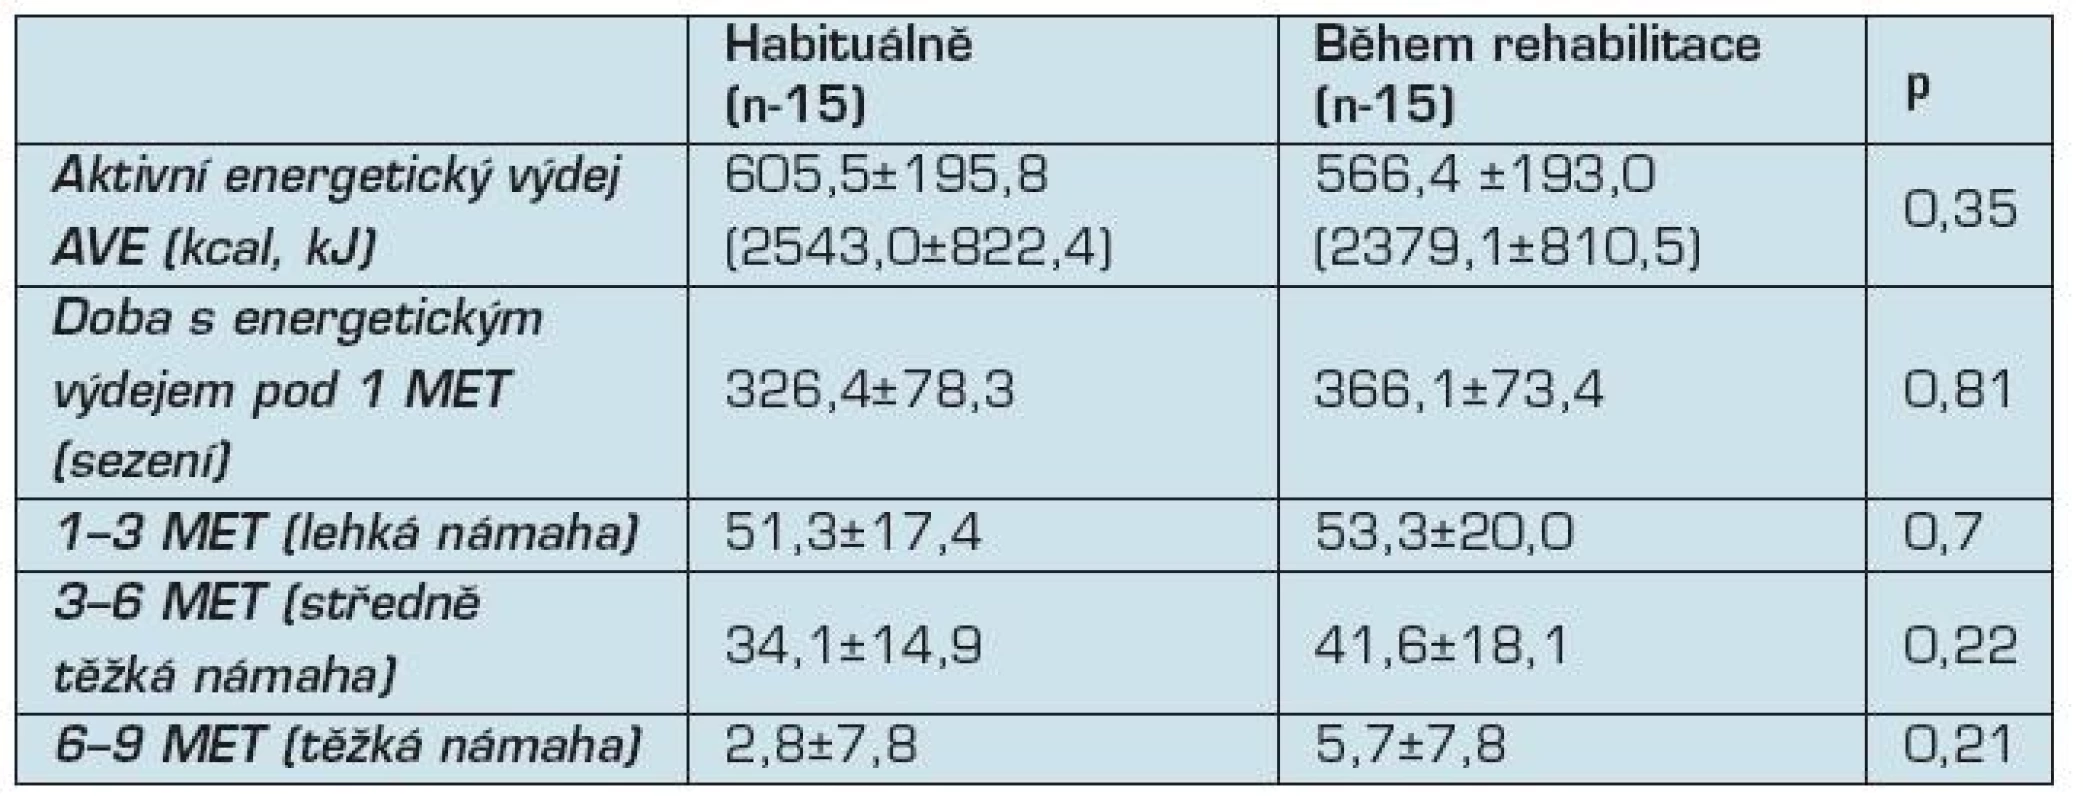 Srovnání habituální pohybové aktivity a pohybové aktivity během rehabilitace (n-15)